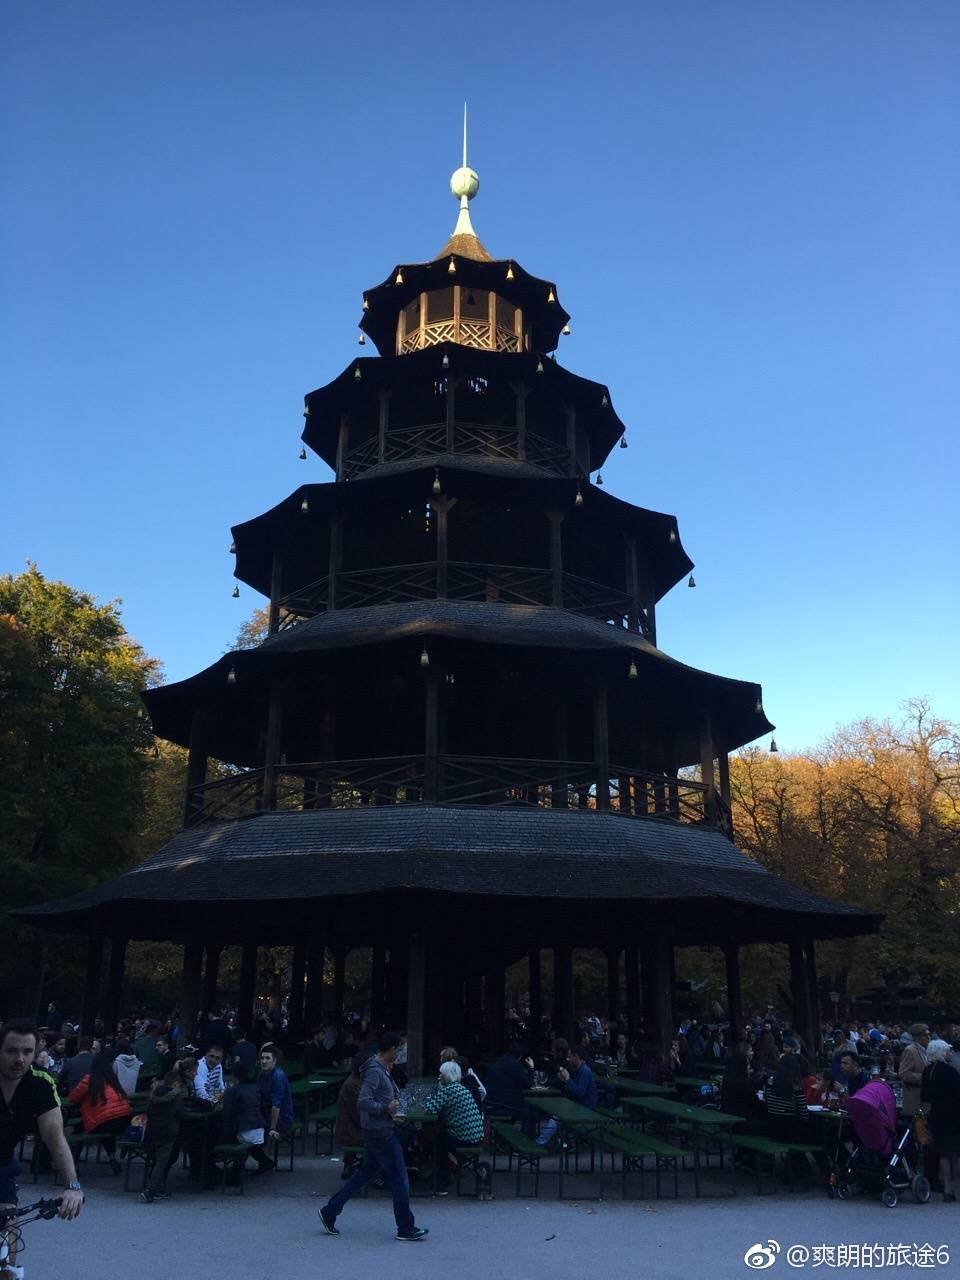 China Garten Best Of Chinesischer Turm attractions Zoeç· Munich Travel Review